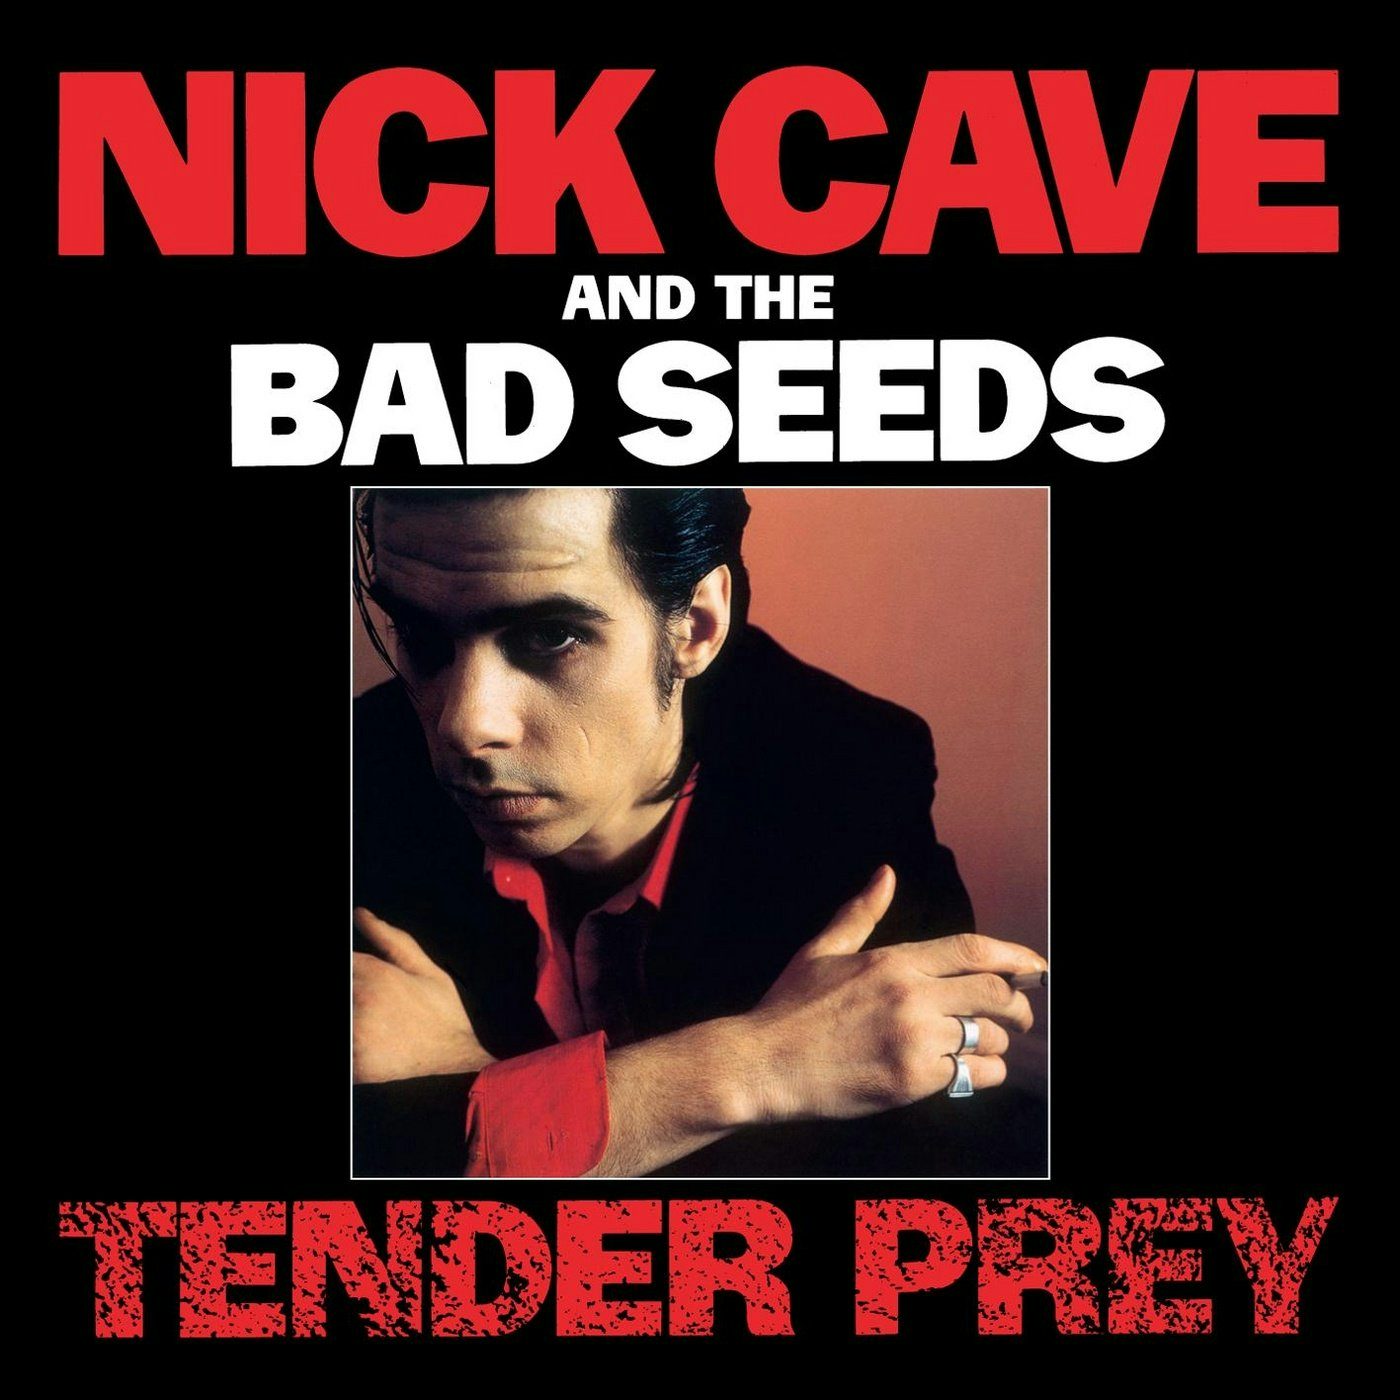 Nick Cave u0026 The Bad Seeds - Tender Prey